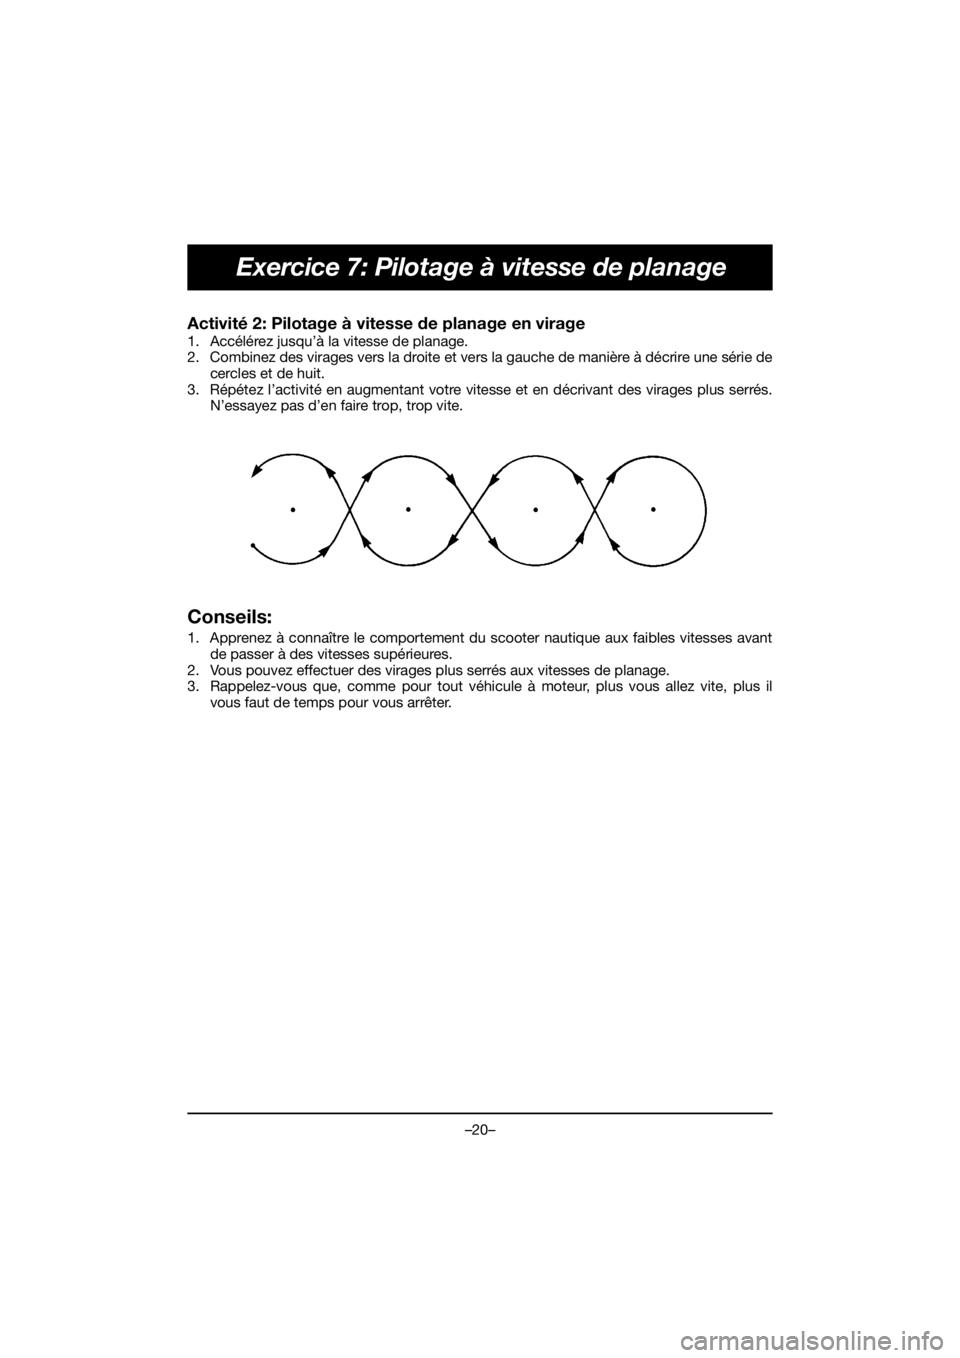 YAMAHA VX DELUXE 2019  Manual de utilização (in Portuguese) –20–
Exercice 7: Pilotage à vitesse de planage
Activité 2: Pilotage à vitesse de planage en virage 
1. Accélérez jusqu’à la vitesse de planage. 
2. Combinez des virages vers la droite et v